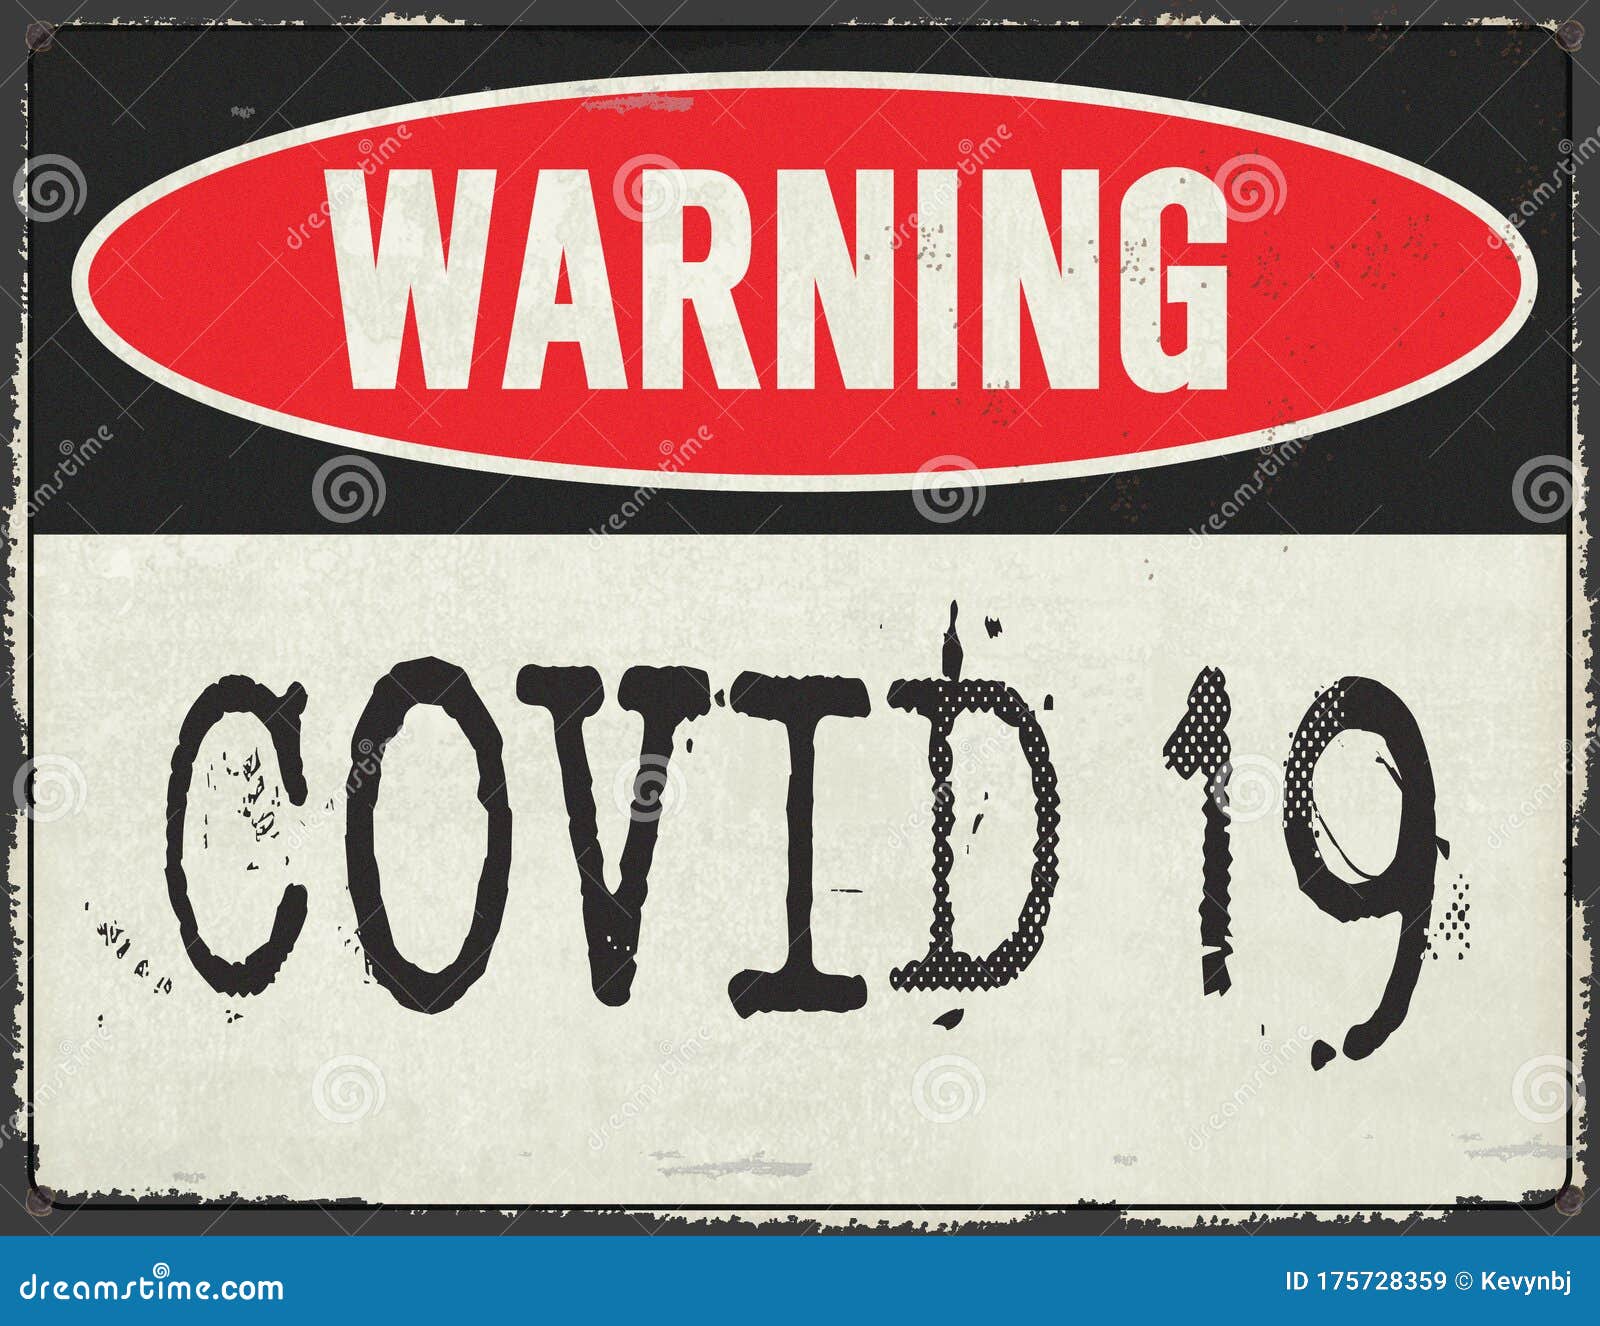 corona virus warning sign metal grunge rustic